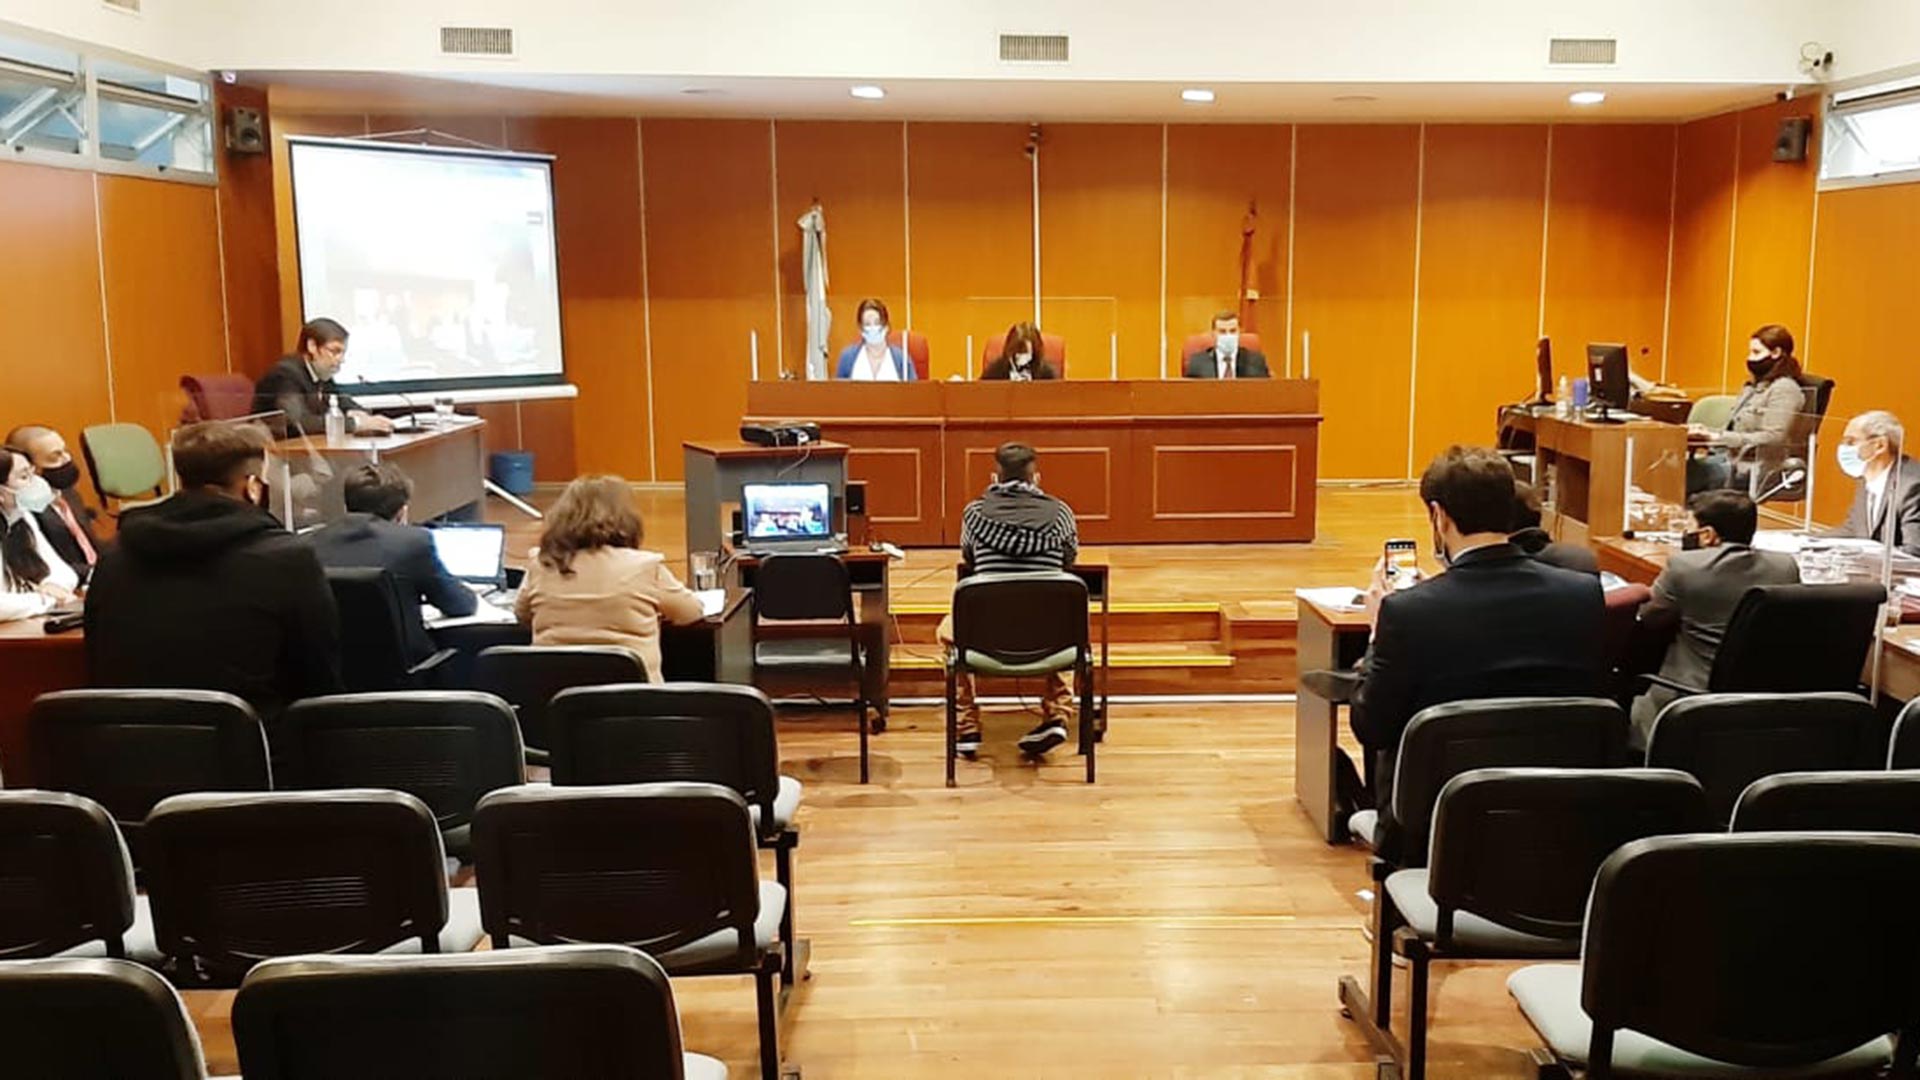 En octubre de 2021 Lautaro Teruel fue condenado a 12 años de prisión por doble abuso sexual agravado por un tribunal de Salta